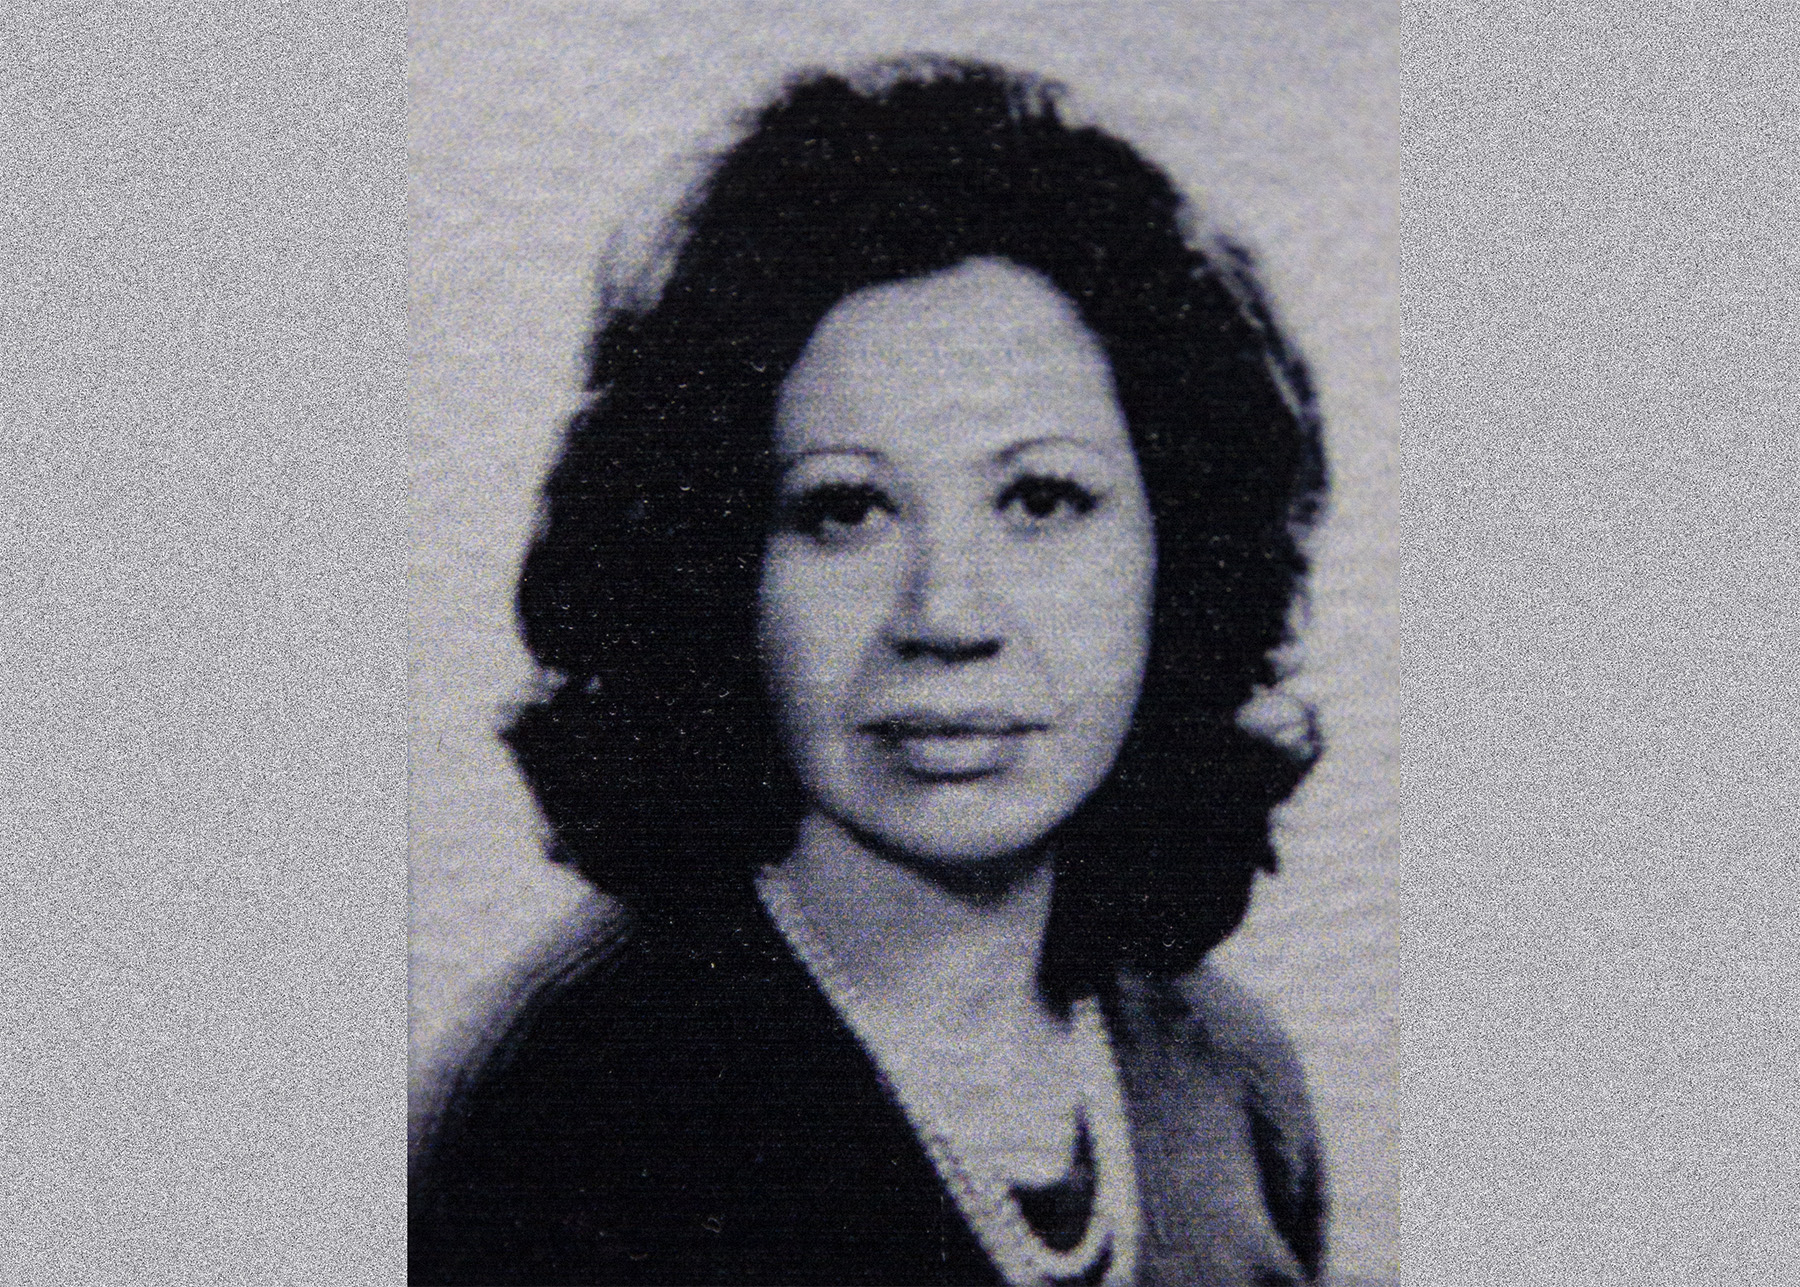 A ex-vereadora Elisa Vieira Simioni durante seu mandato na Câmara Municipal